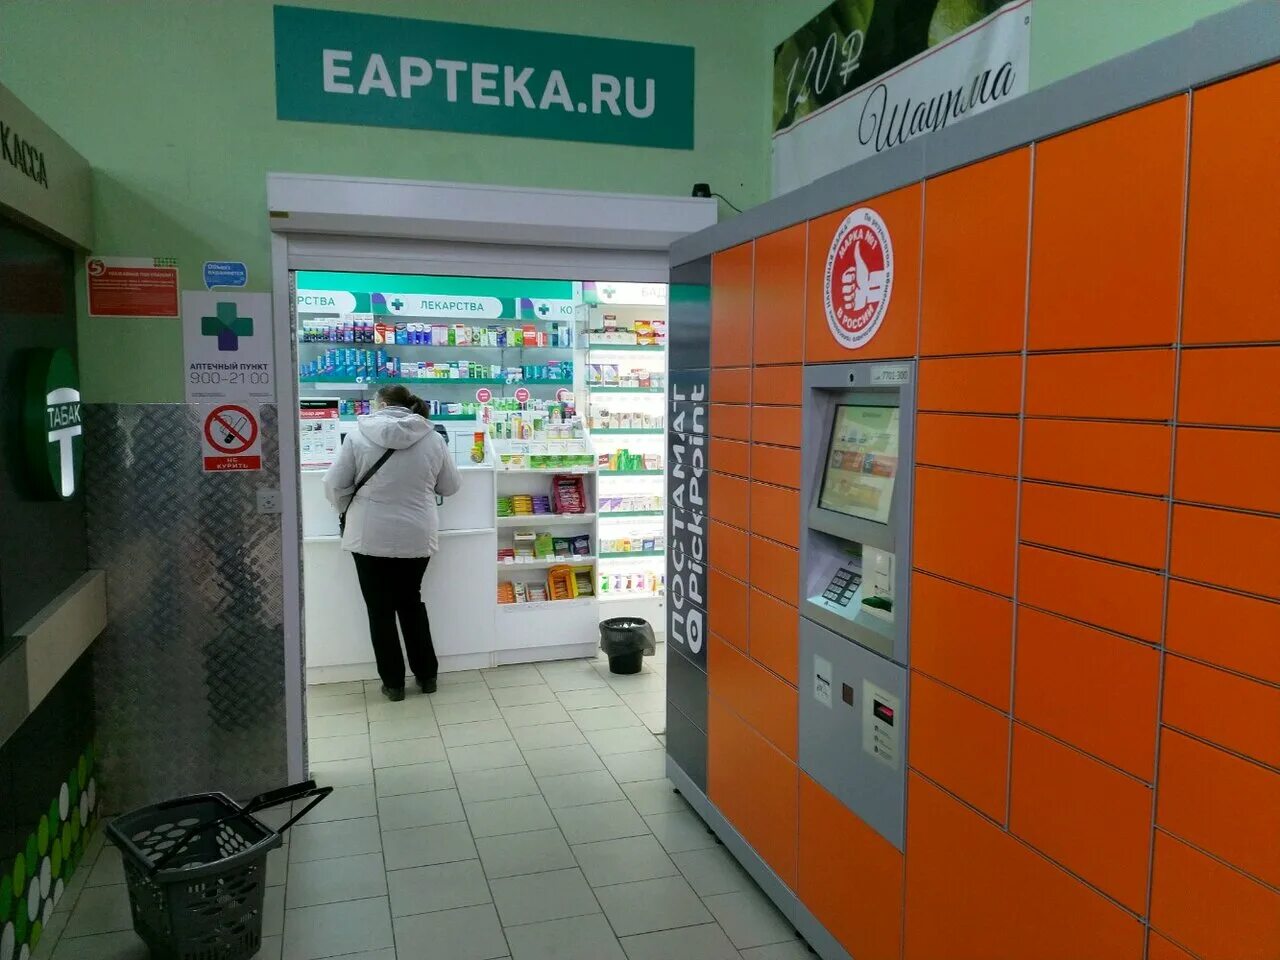 Еаптека ру заказ лекарств с доставкой московская